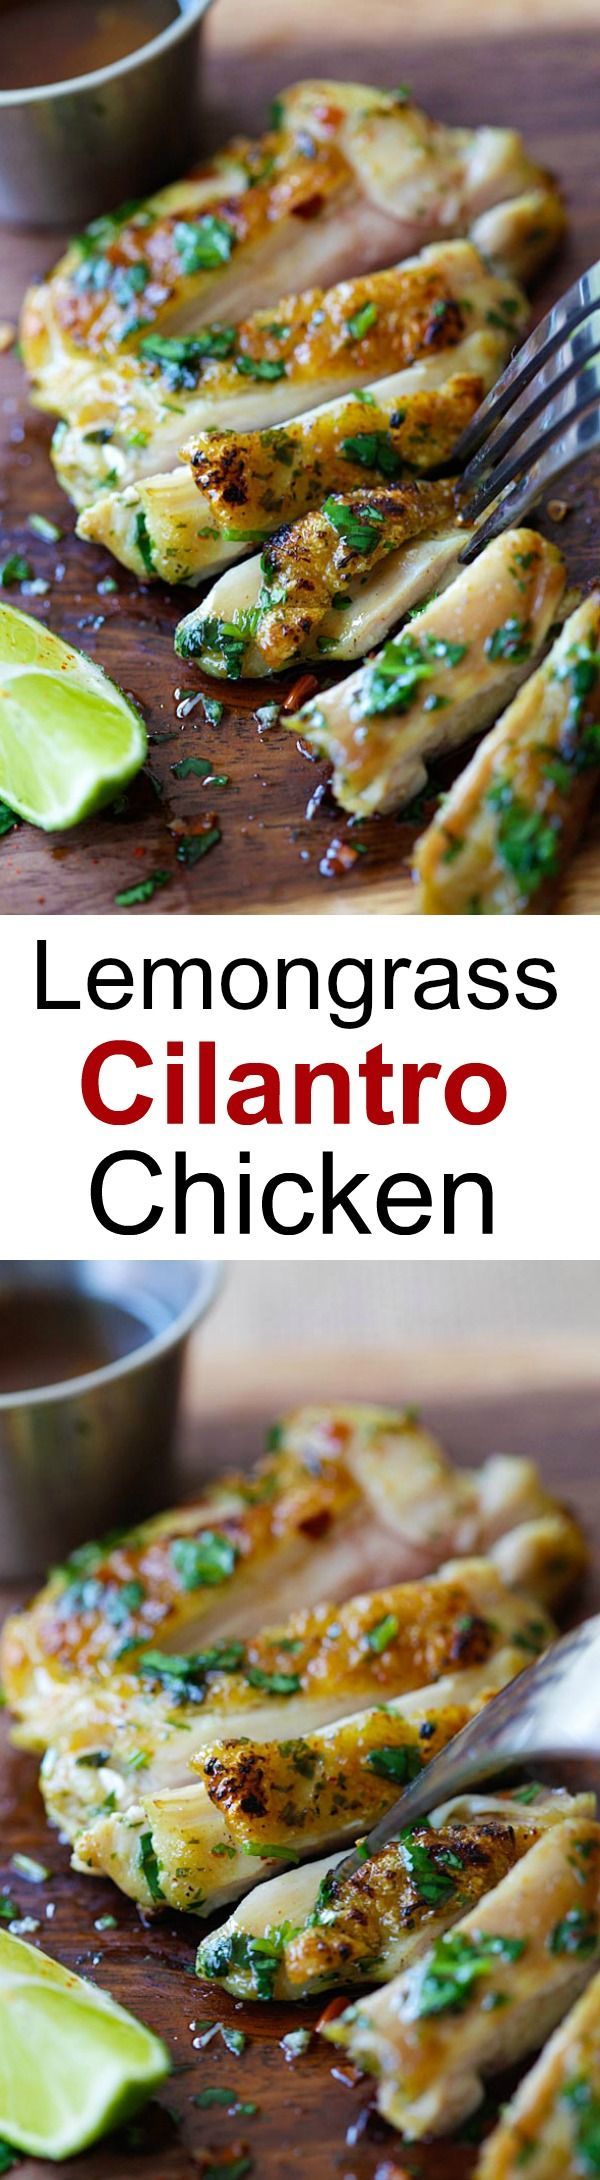 Lemongrass Cilantro Chicken – crazy delicious grilled chicken marinated with lemongrass, cilantro an